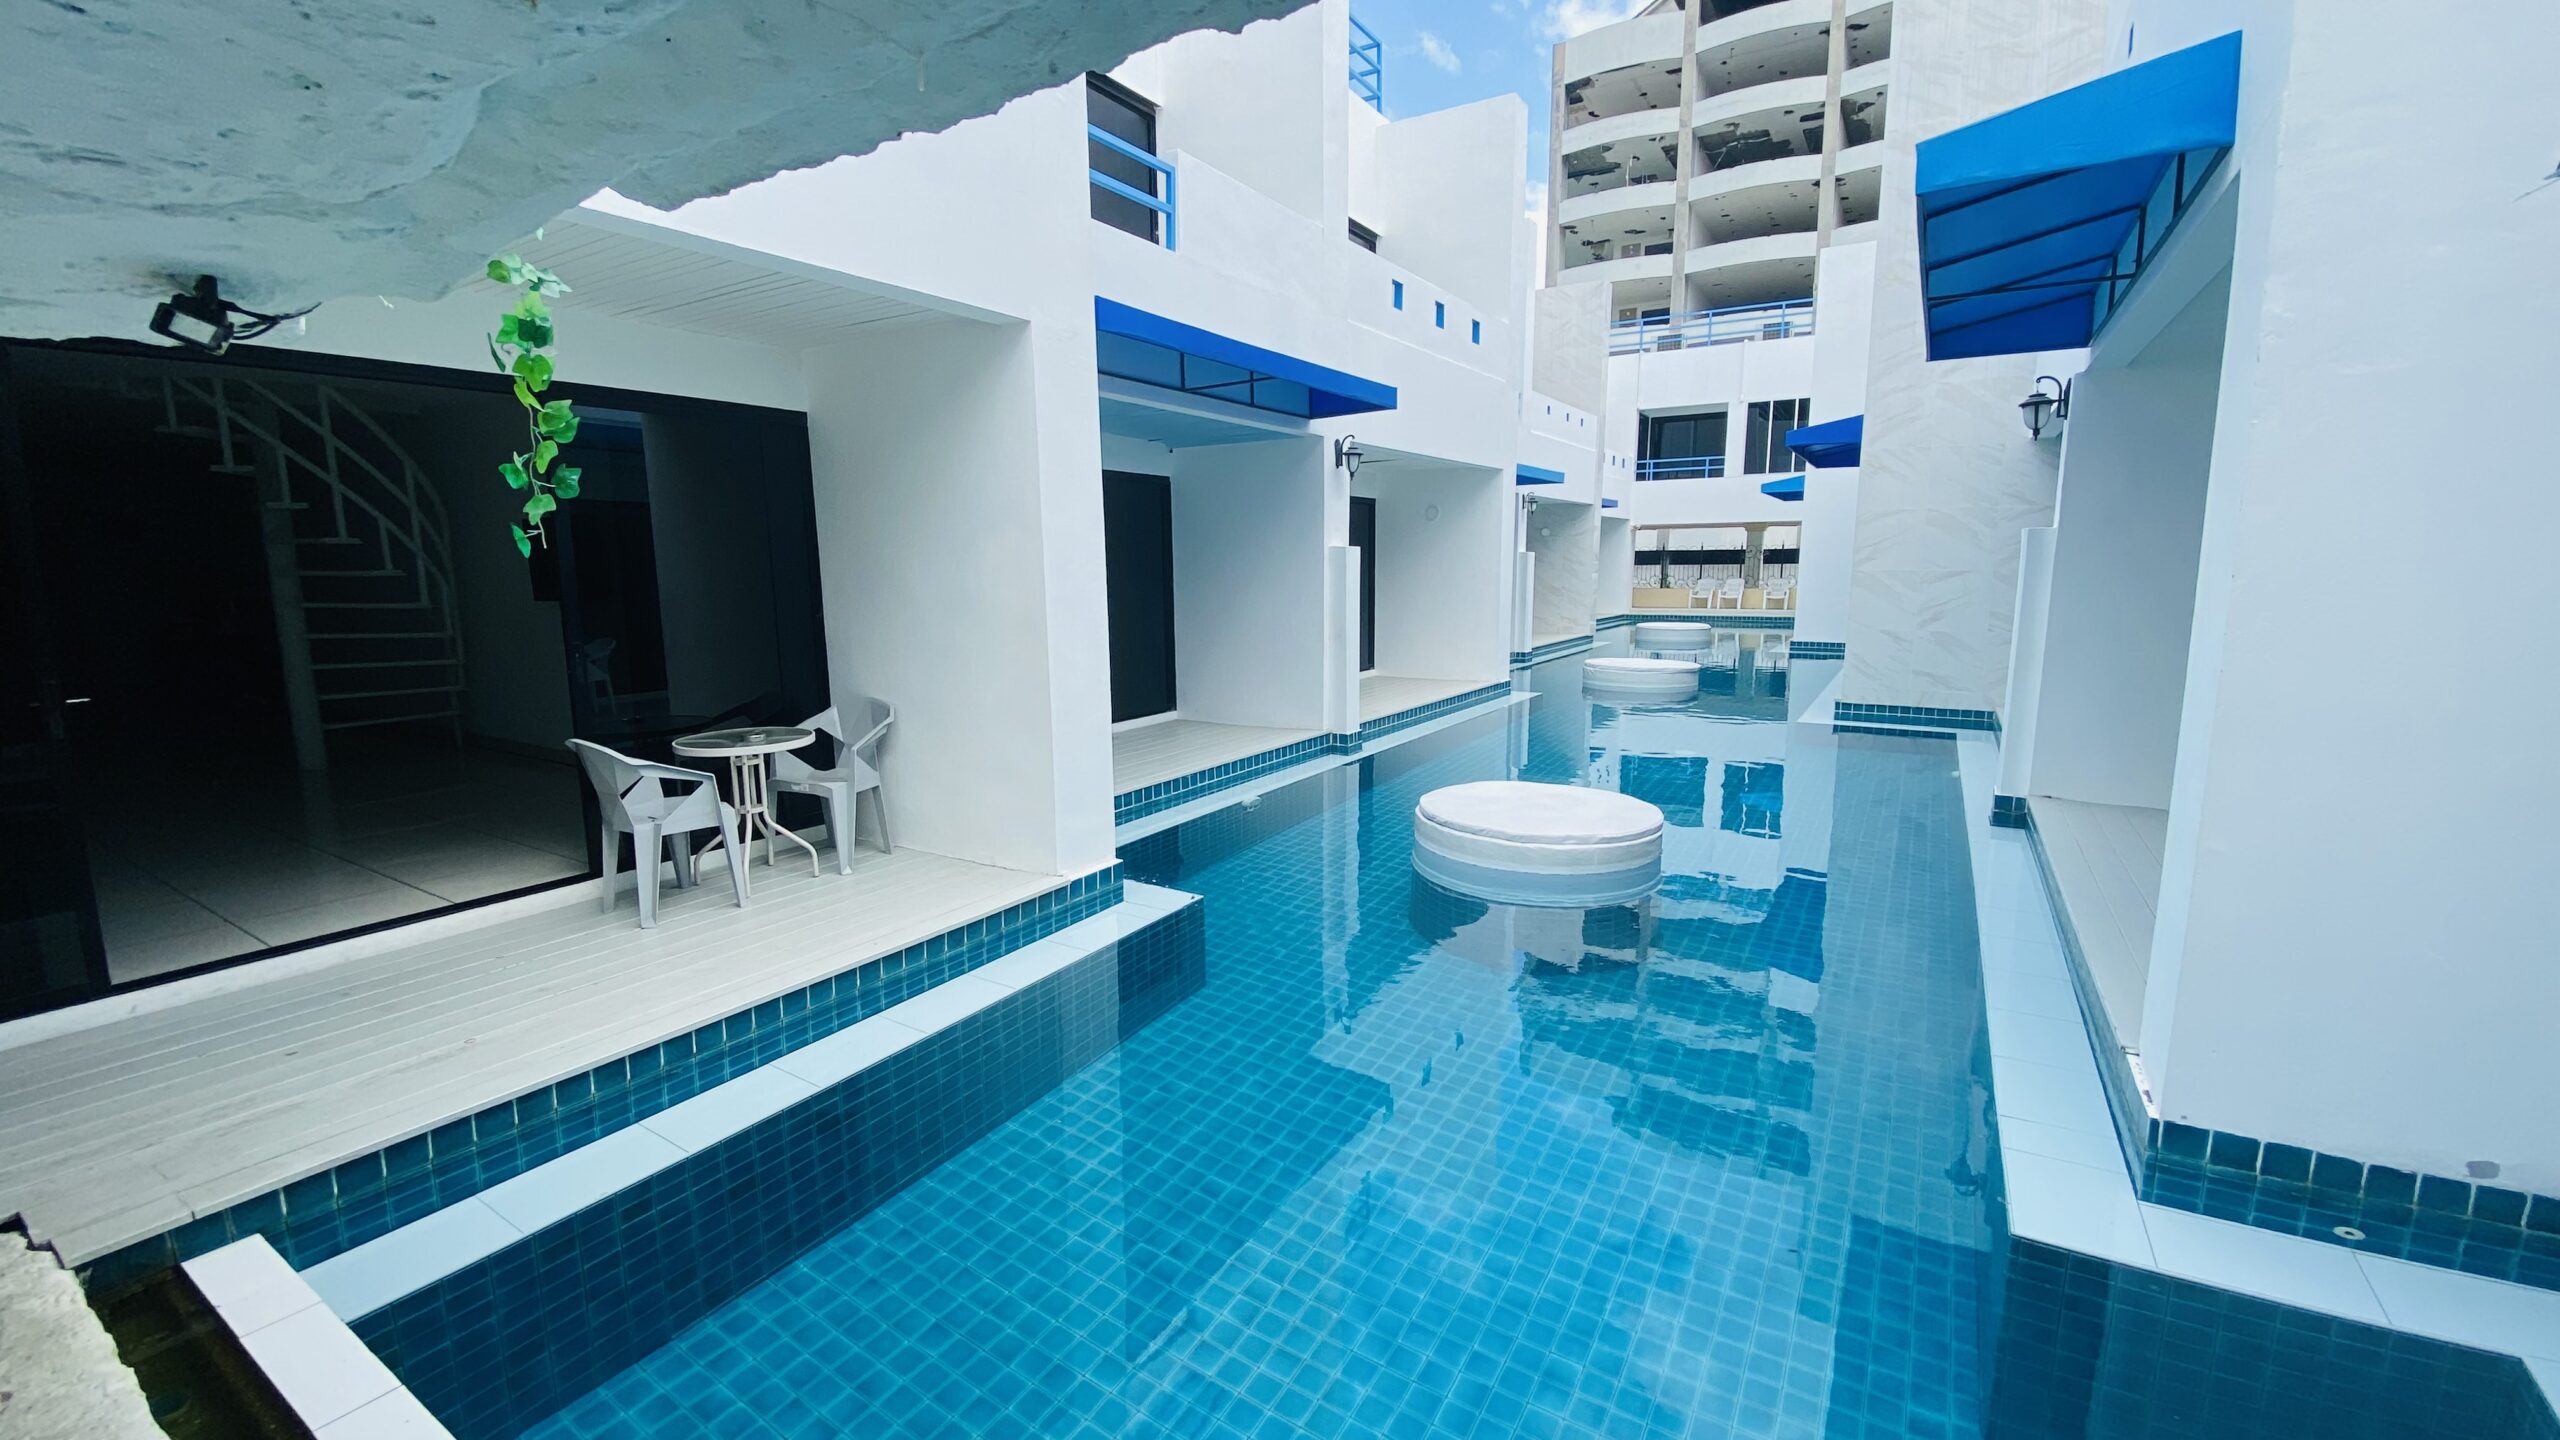 P066 Pool Villa Business Pratumnak for Long Term Lease 200,000 Baht per month